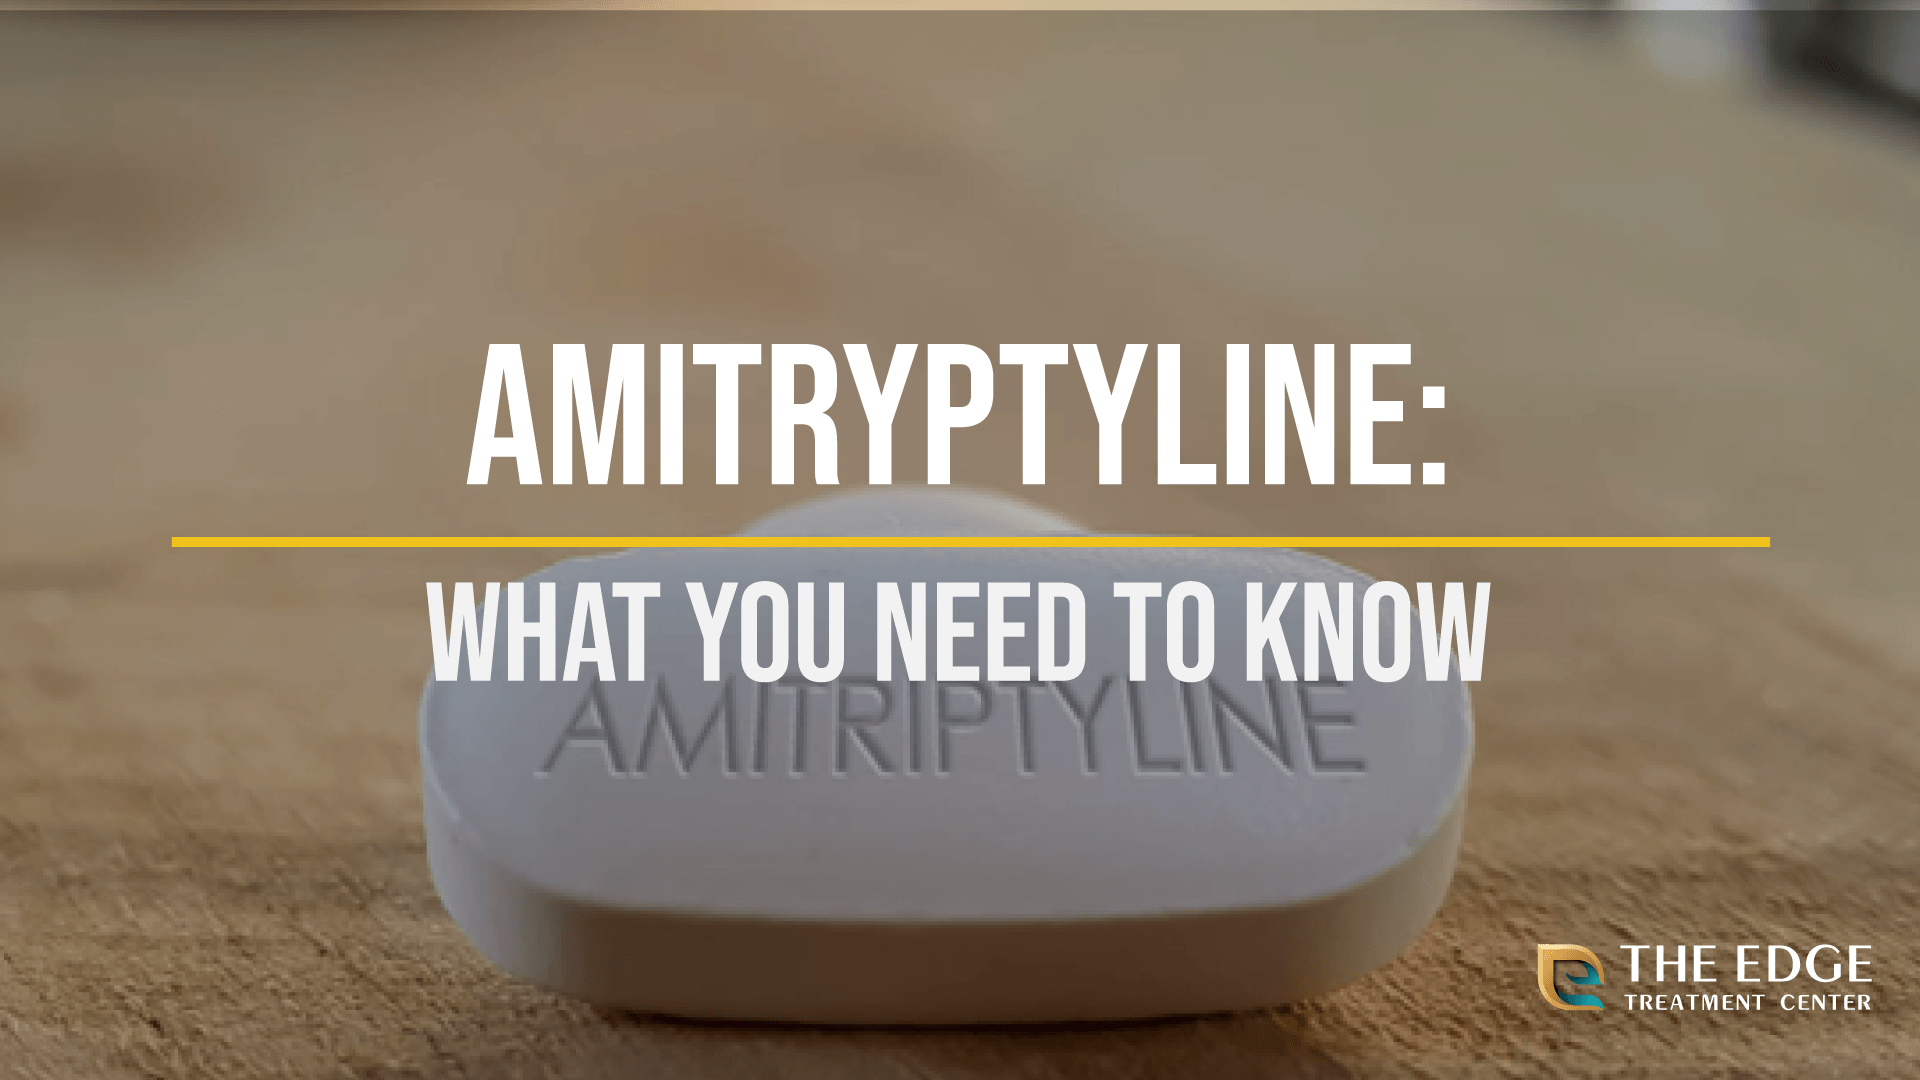 What is Amitryptyline?